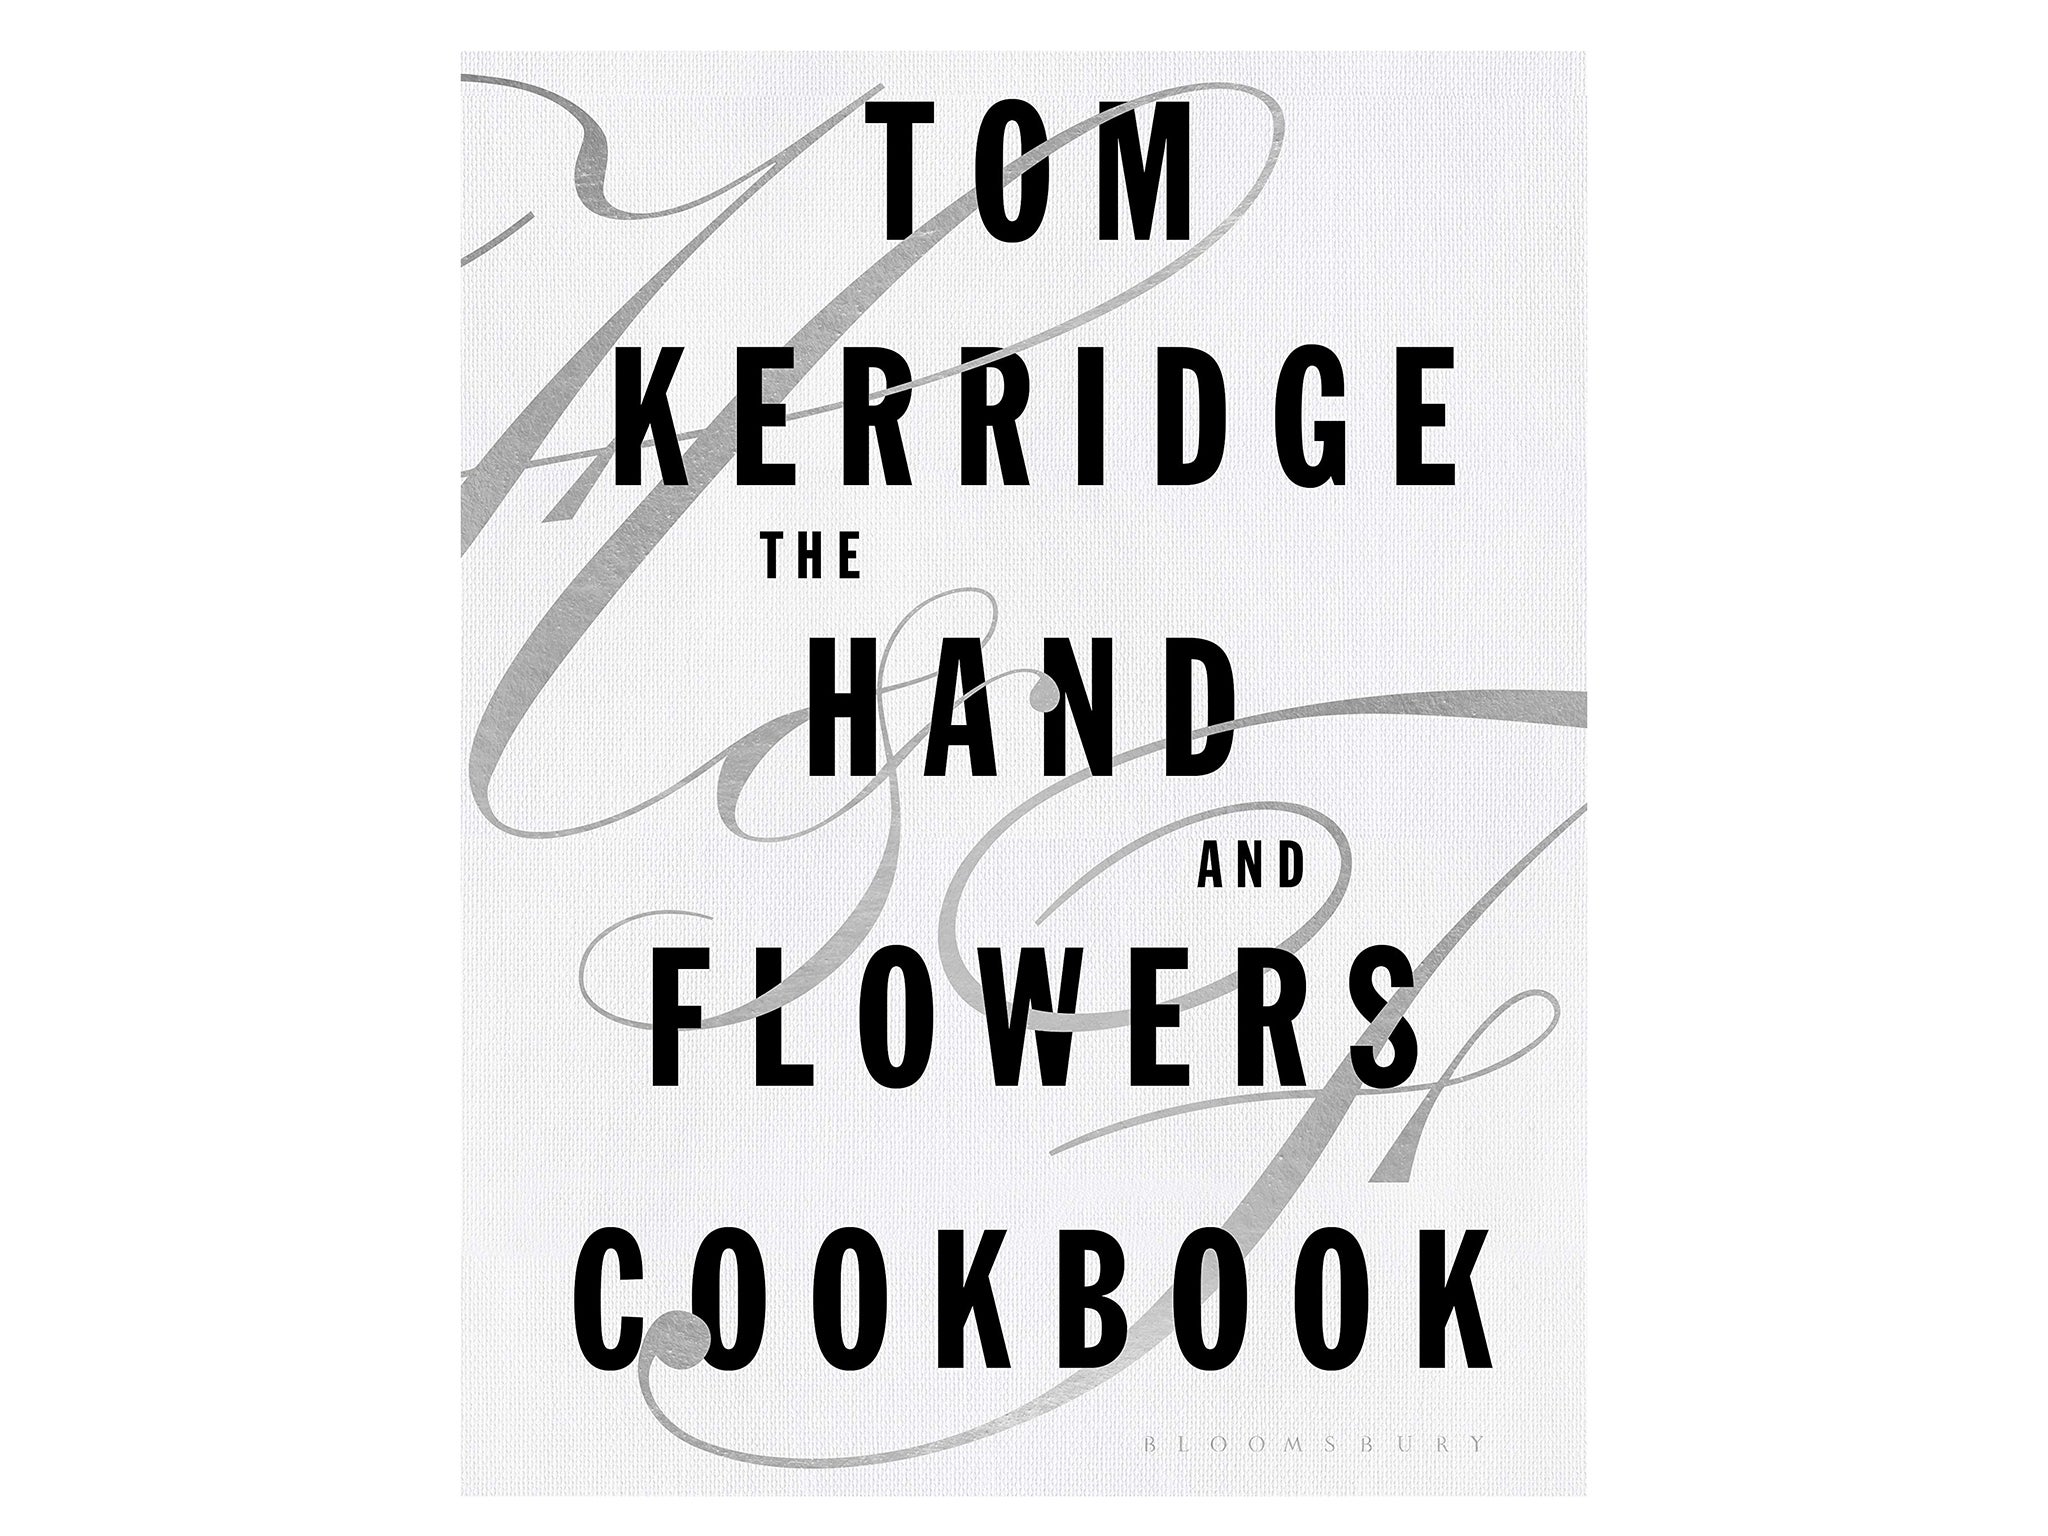 tom-kerridge-hand-flowers-indybest-cookbook-restaurant